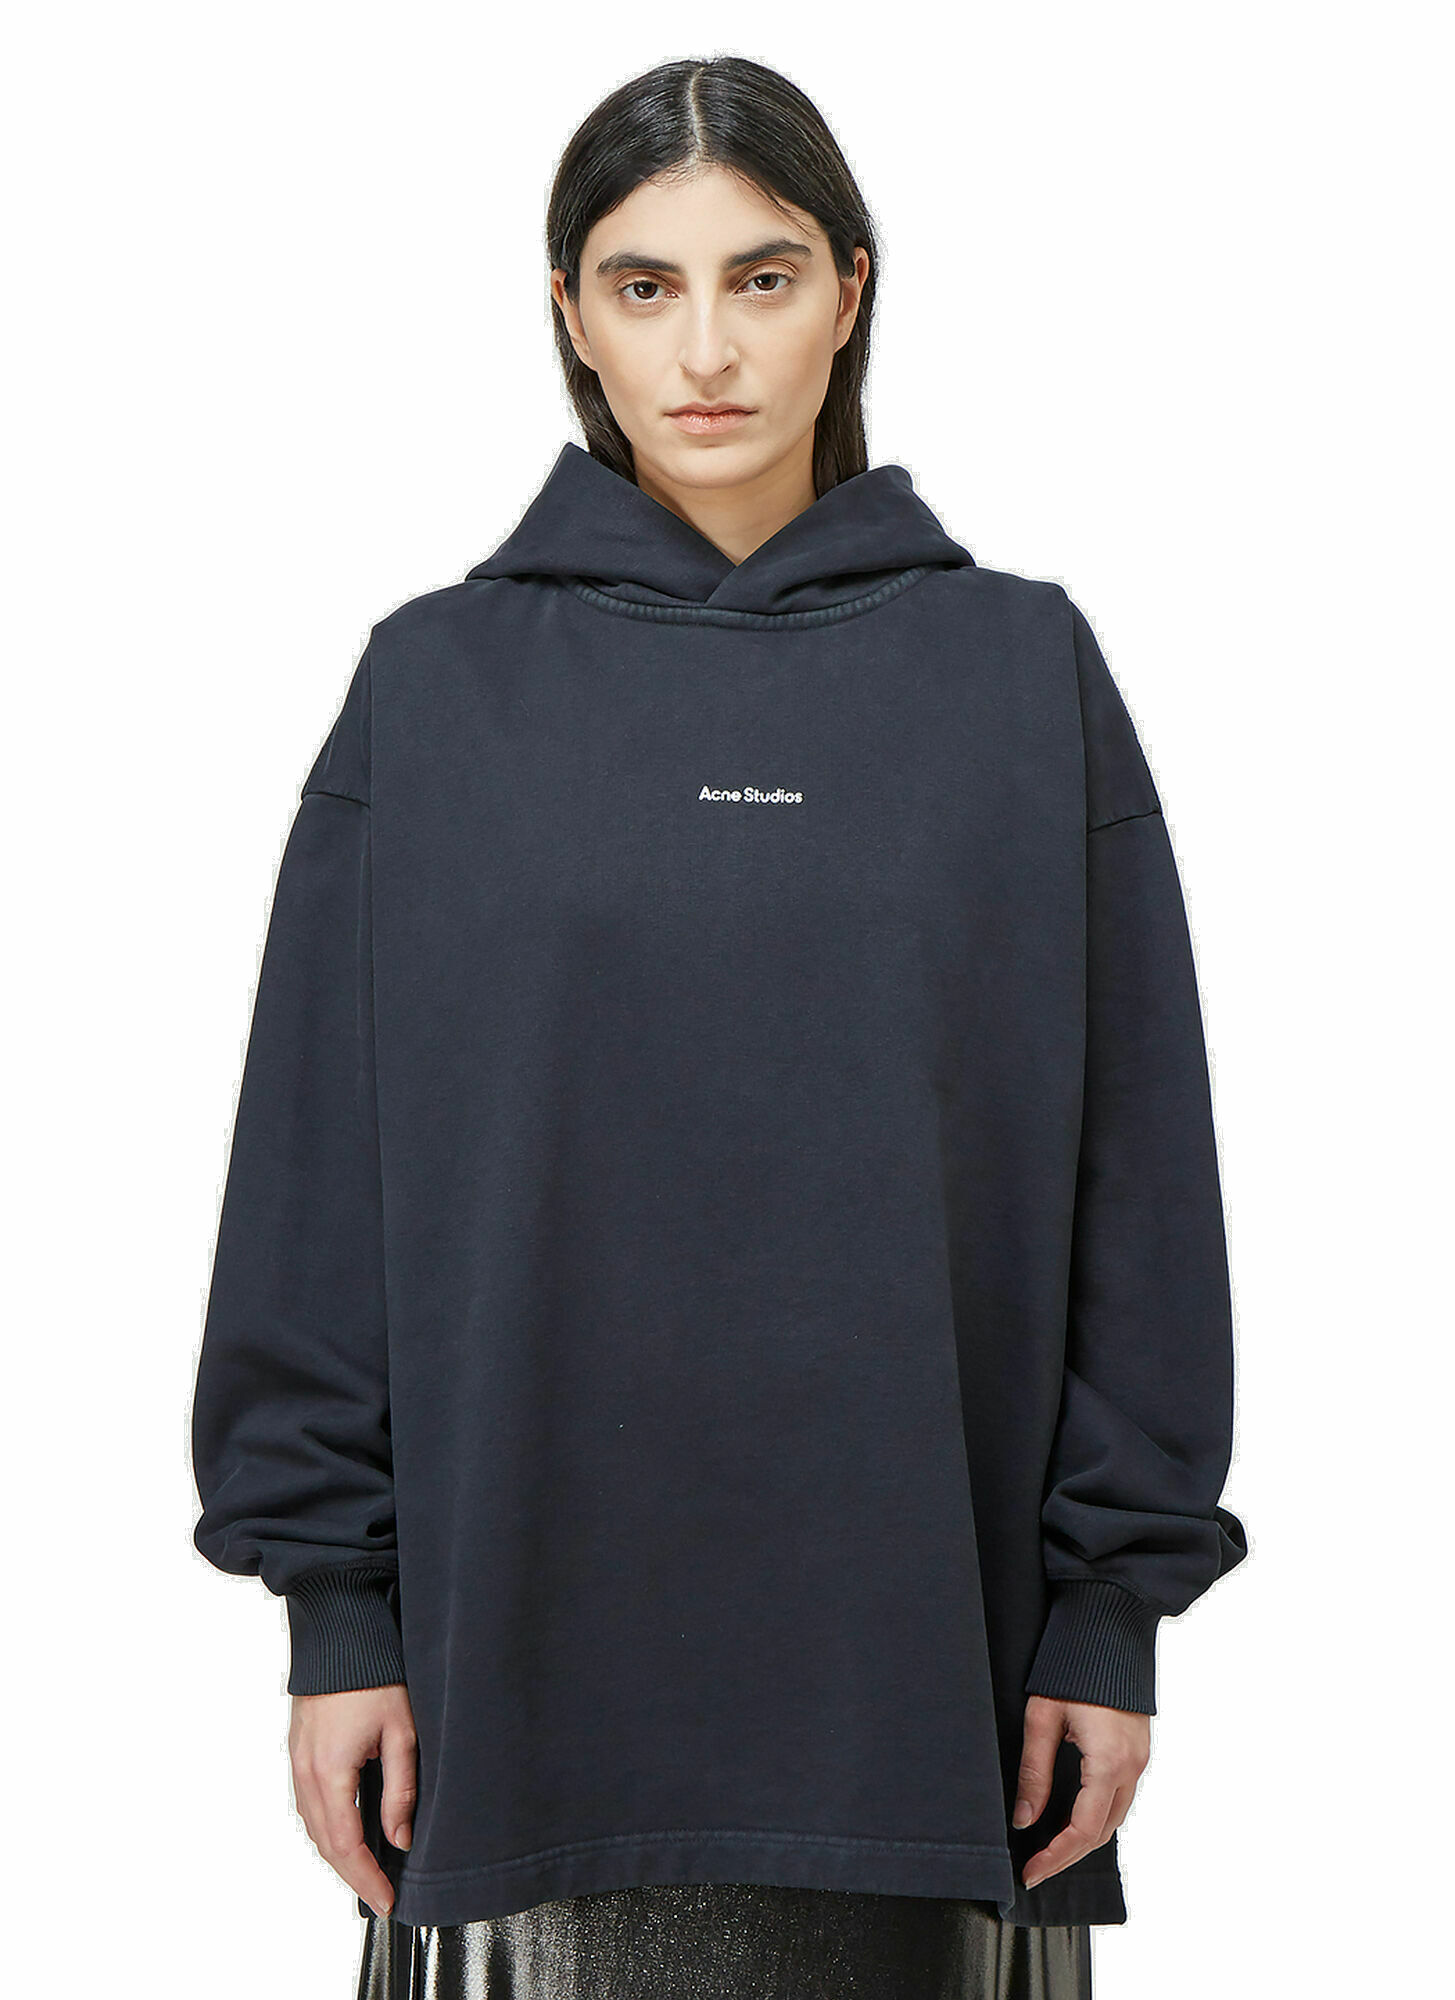 Photo: Fikka Stamp Hooded Sweatshirt in Black